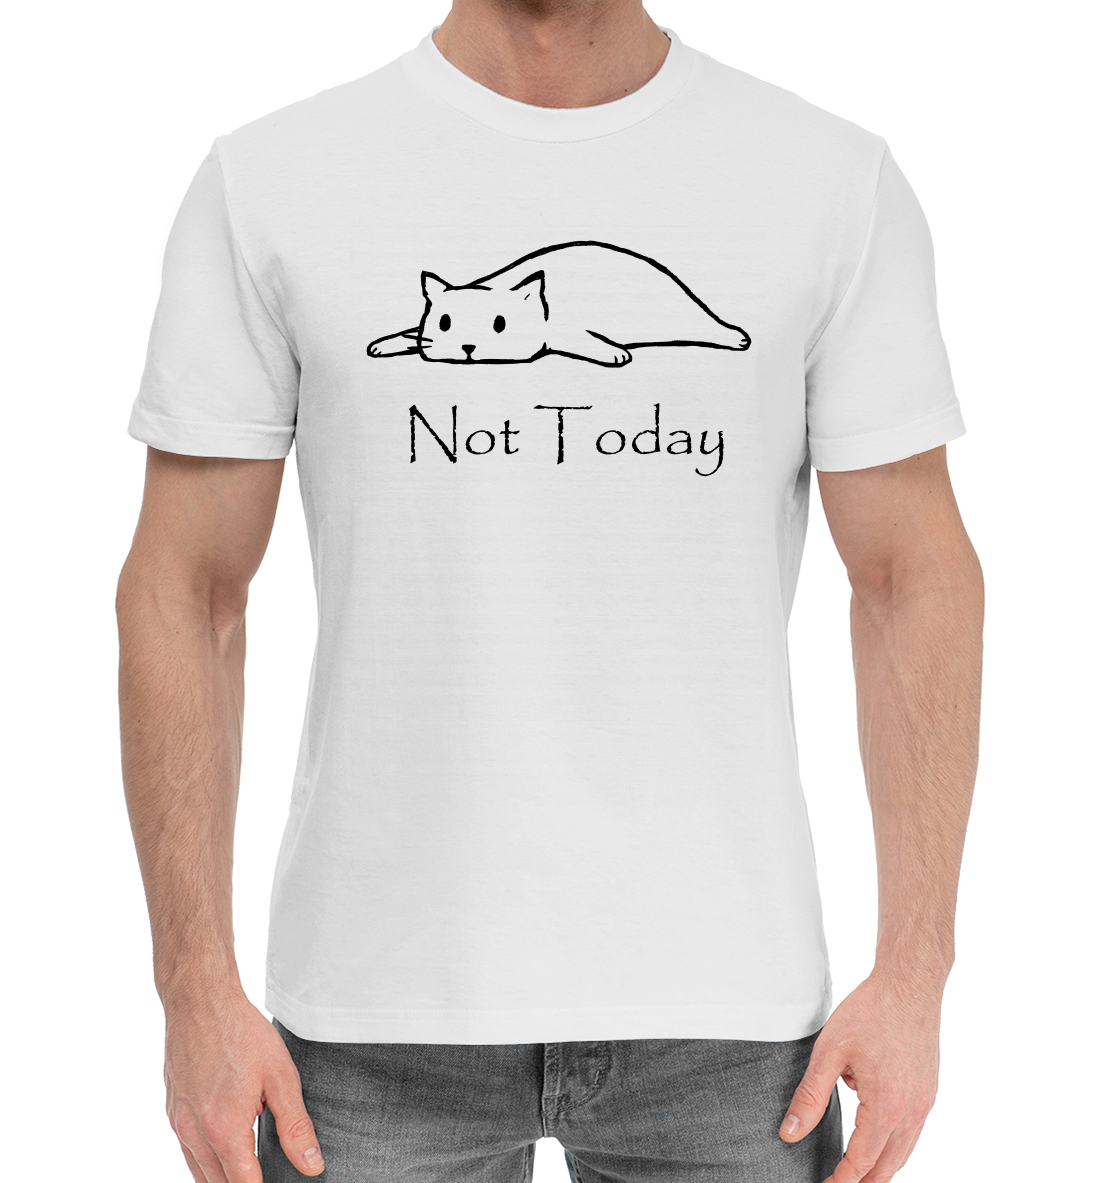 Мужская Хлопковая футболка с надписью Not Today, артикул CAT-906175-hfu-2mp